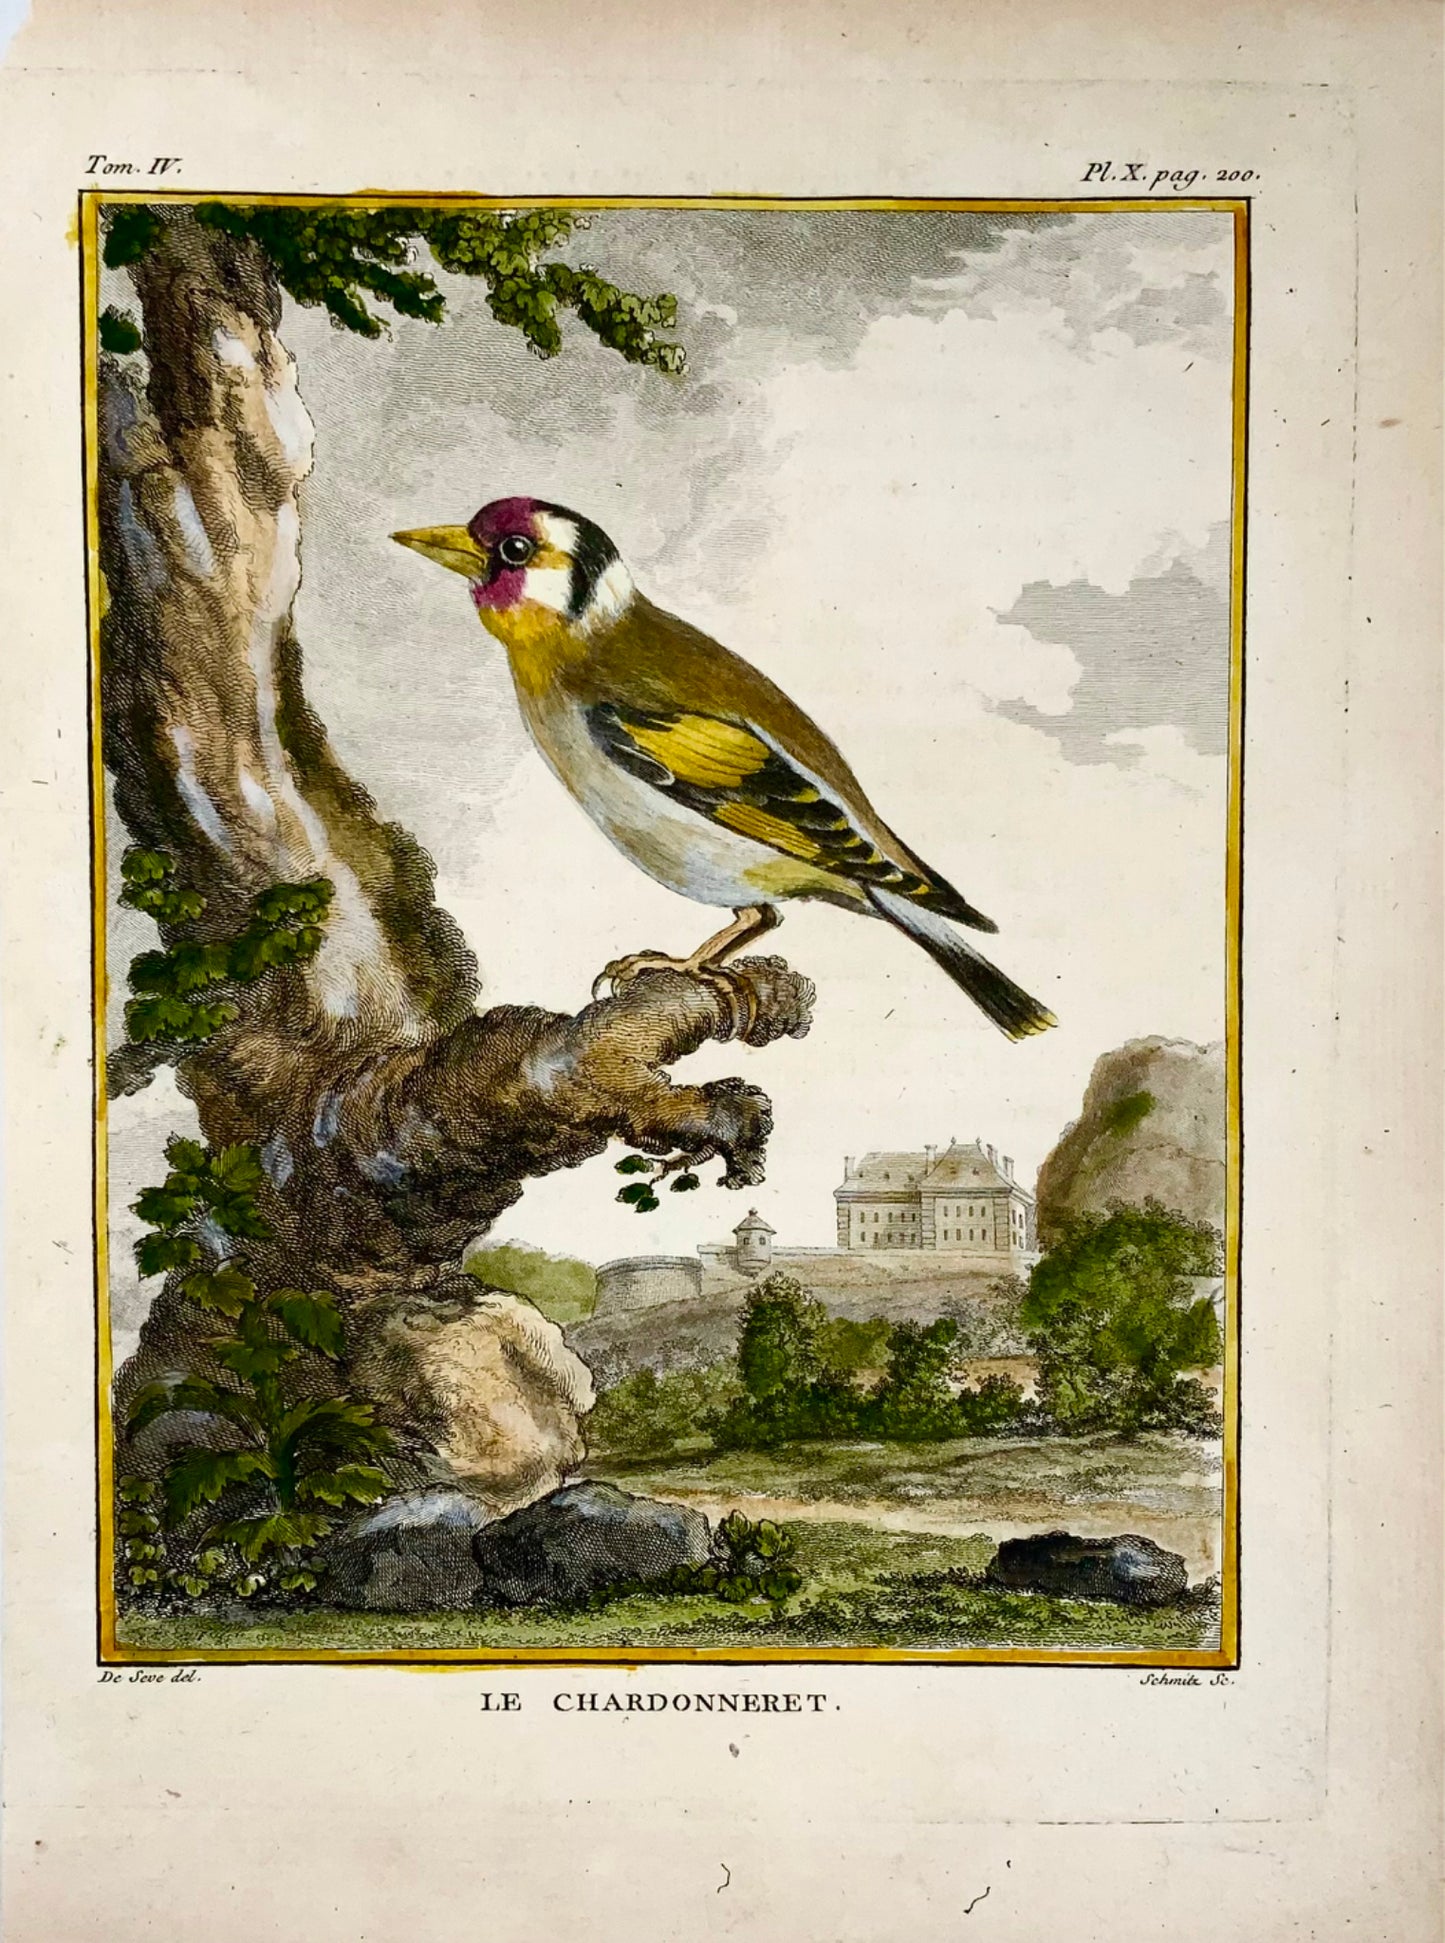 1771 Chardonneret, De Seve, ornithologie, édition grand quart, gravure 